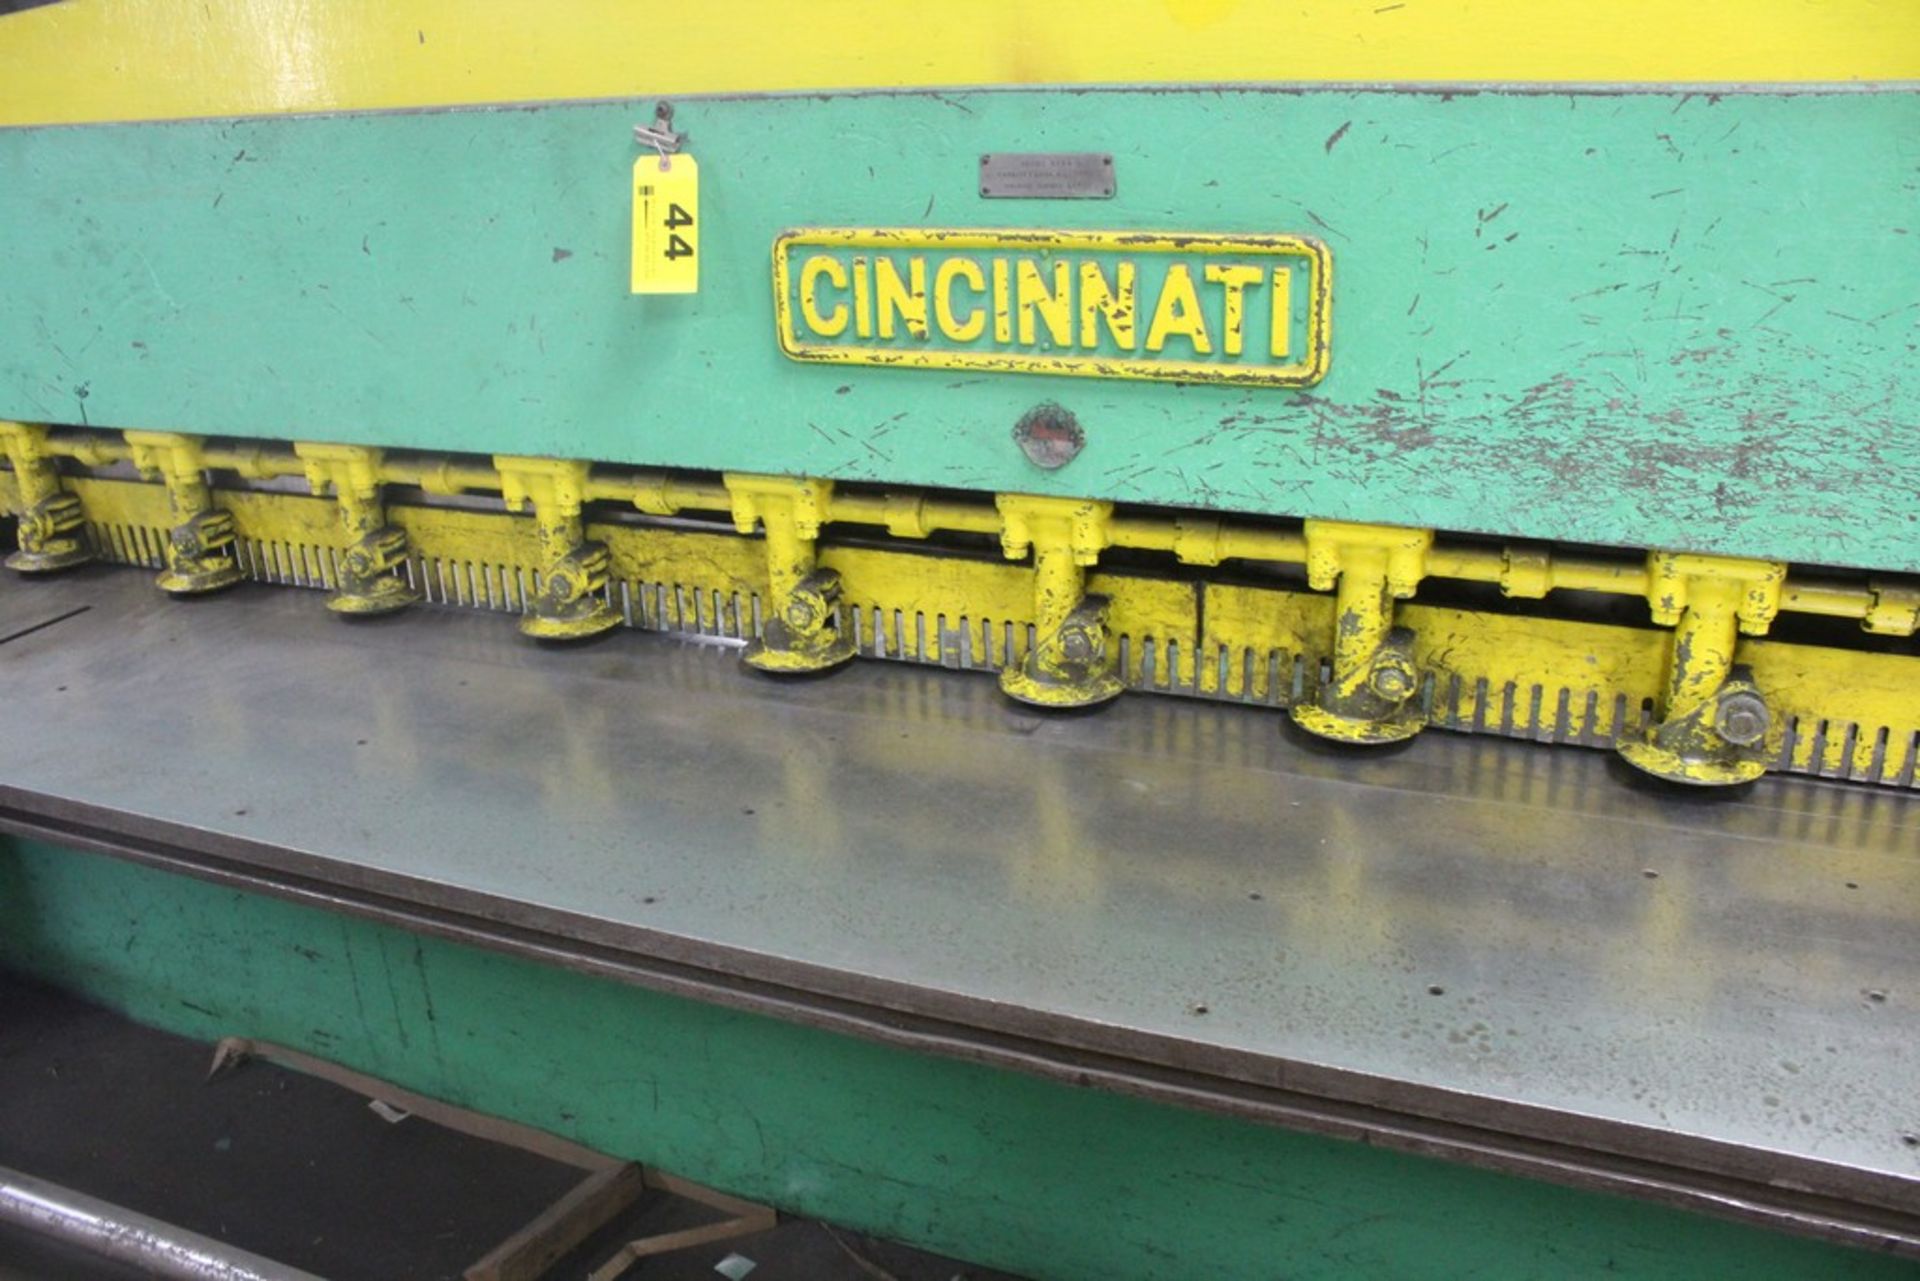 Cincinnati Model 1014 Mechanical Power Squaring Shear, Serial Number: 10726 14' x 12 Ga Capacity - - Image 2 of 9